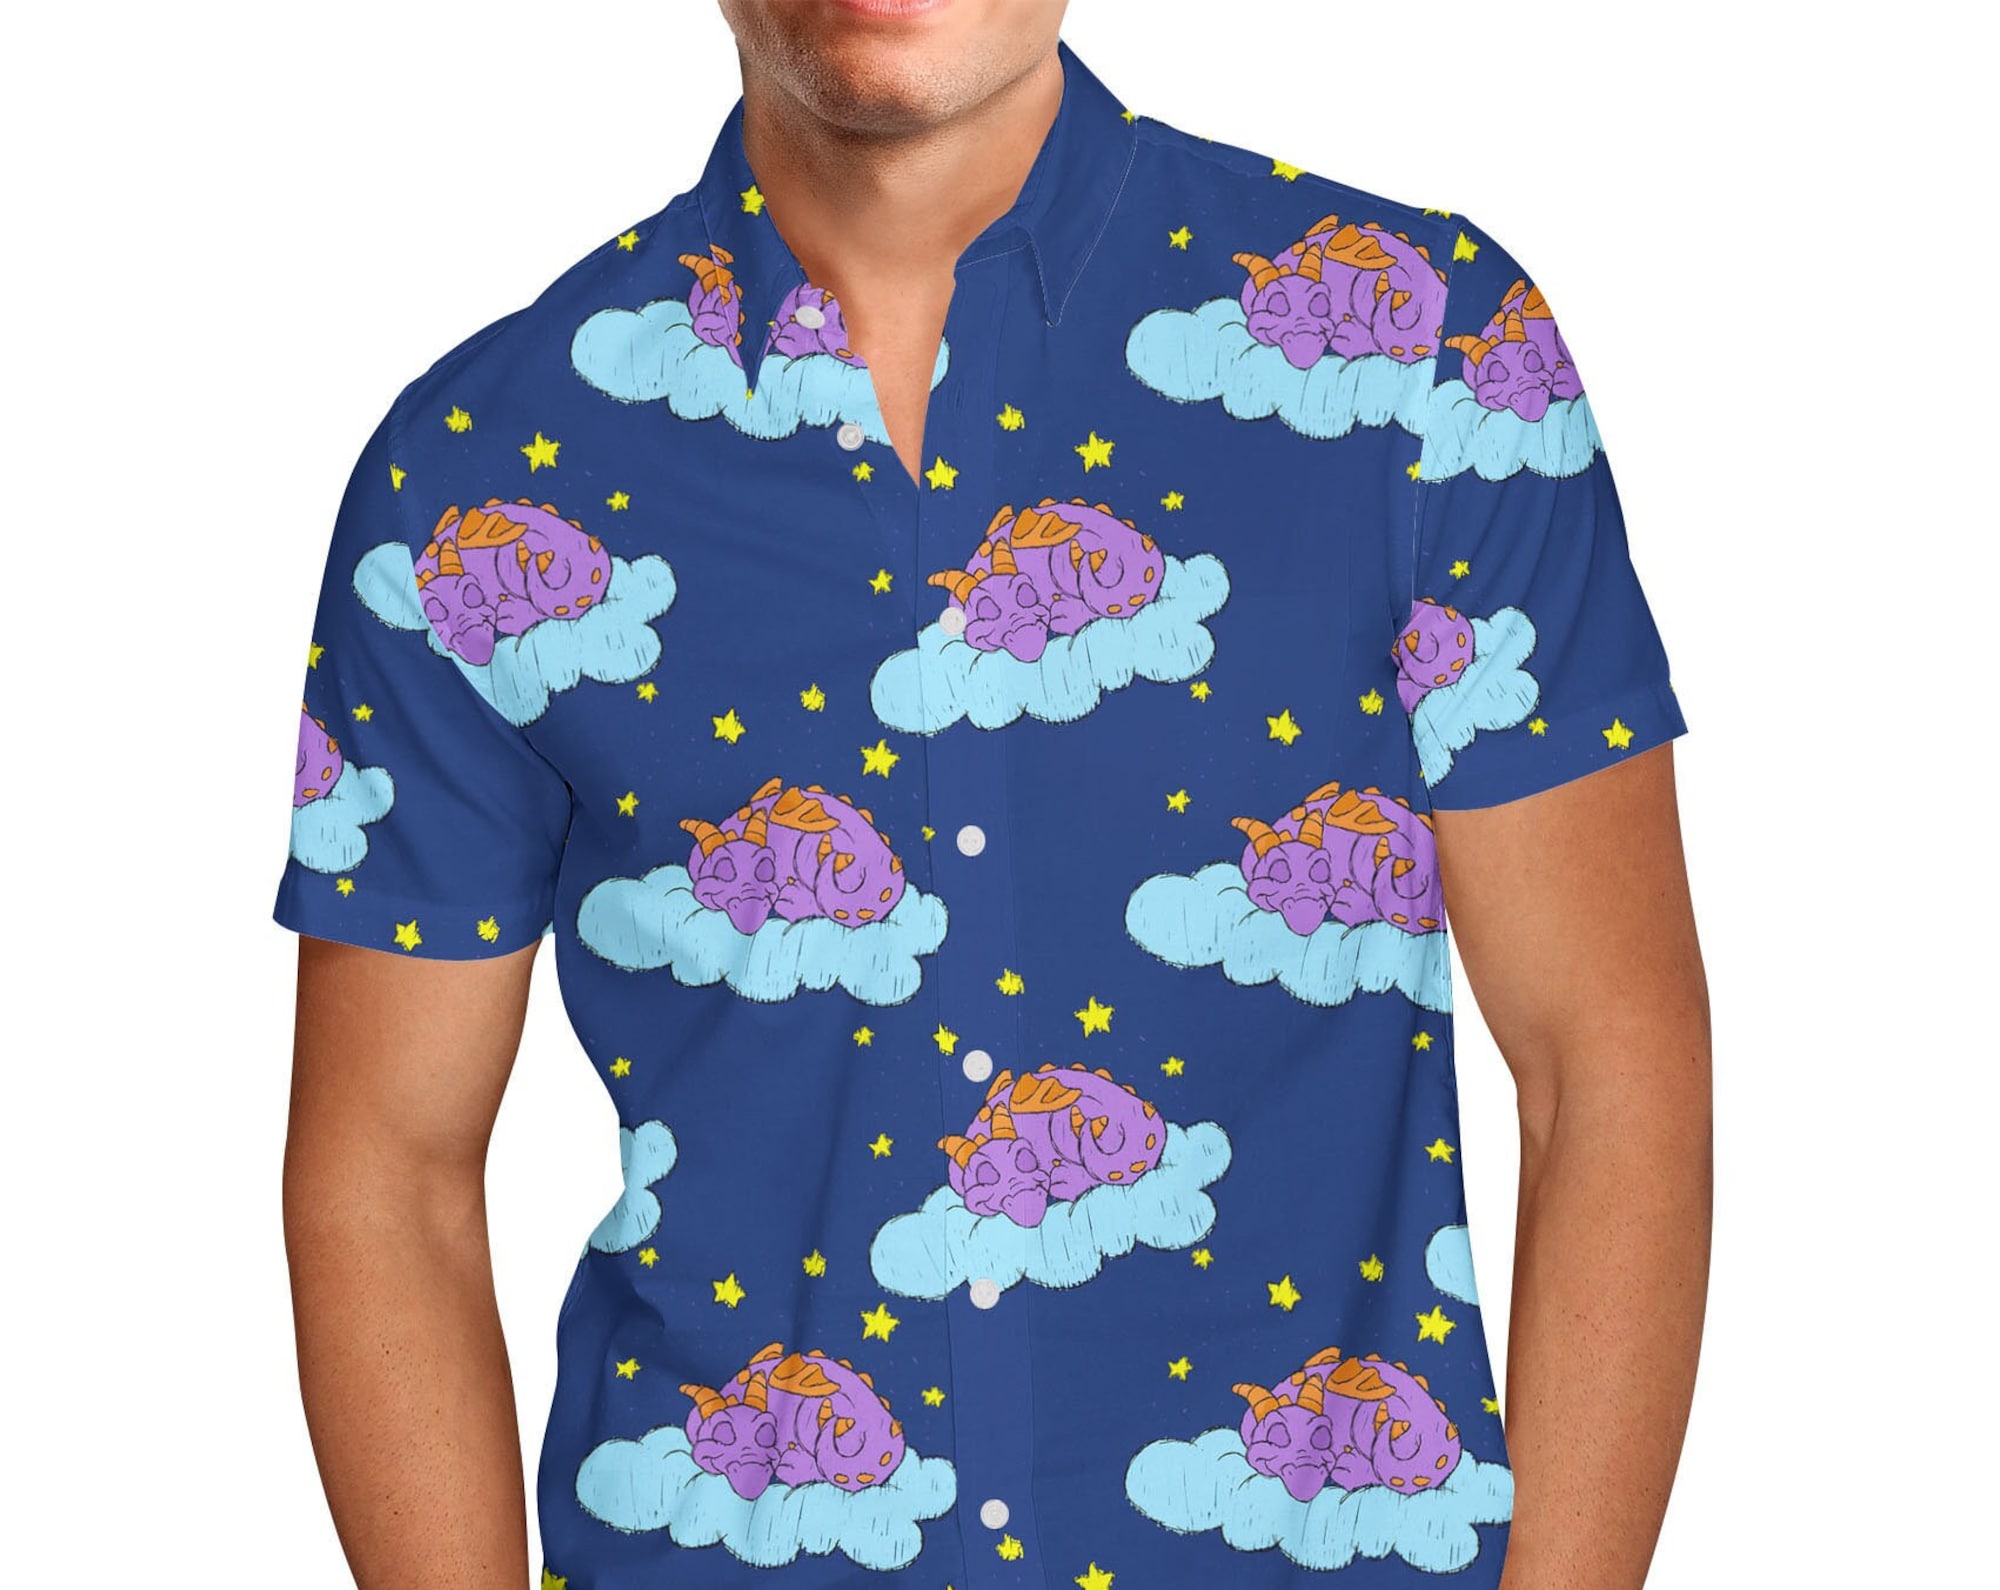 Discover Sleepy Purple Dragon Disney Hawaiin T Shirt